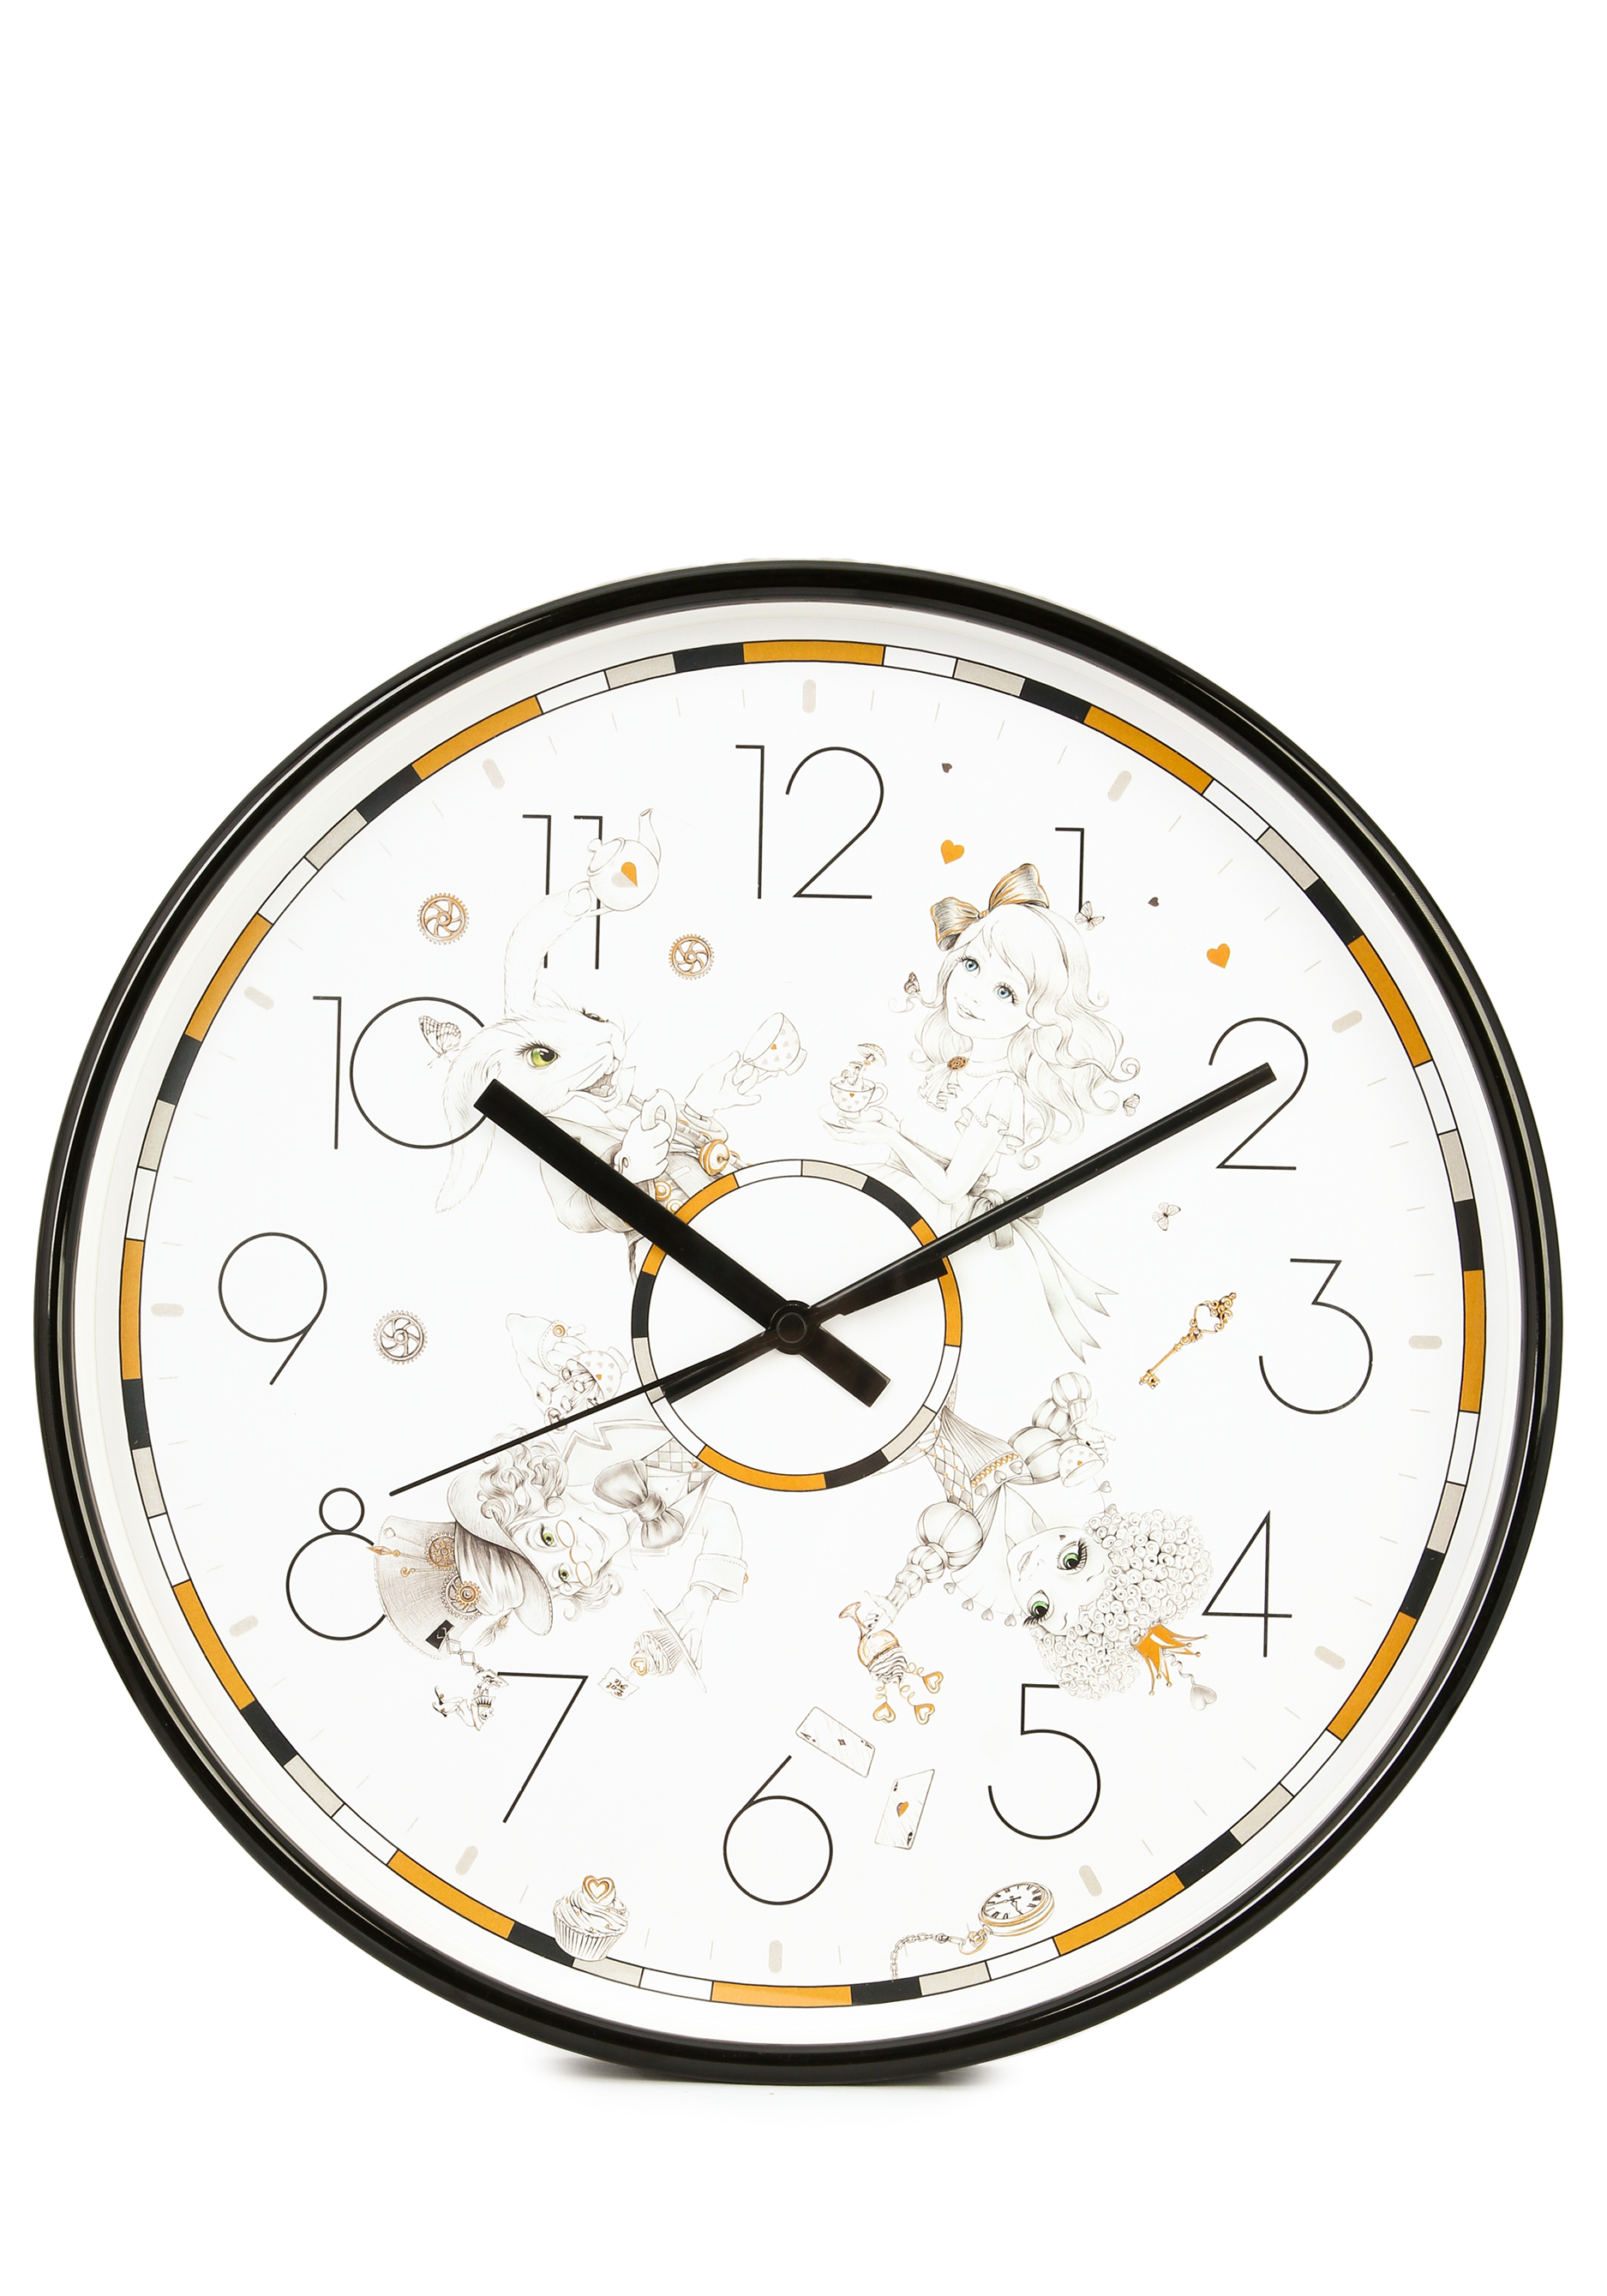 Часы настенные "Волшебство времени" Lefard, цвет черный, размер 30,5 см